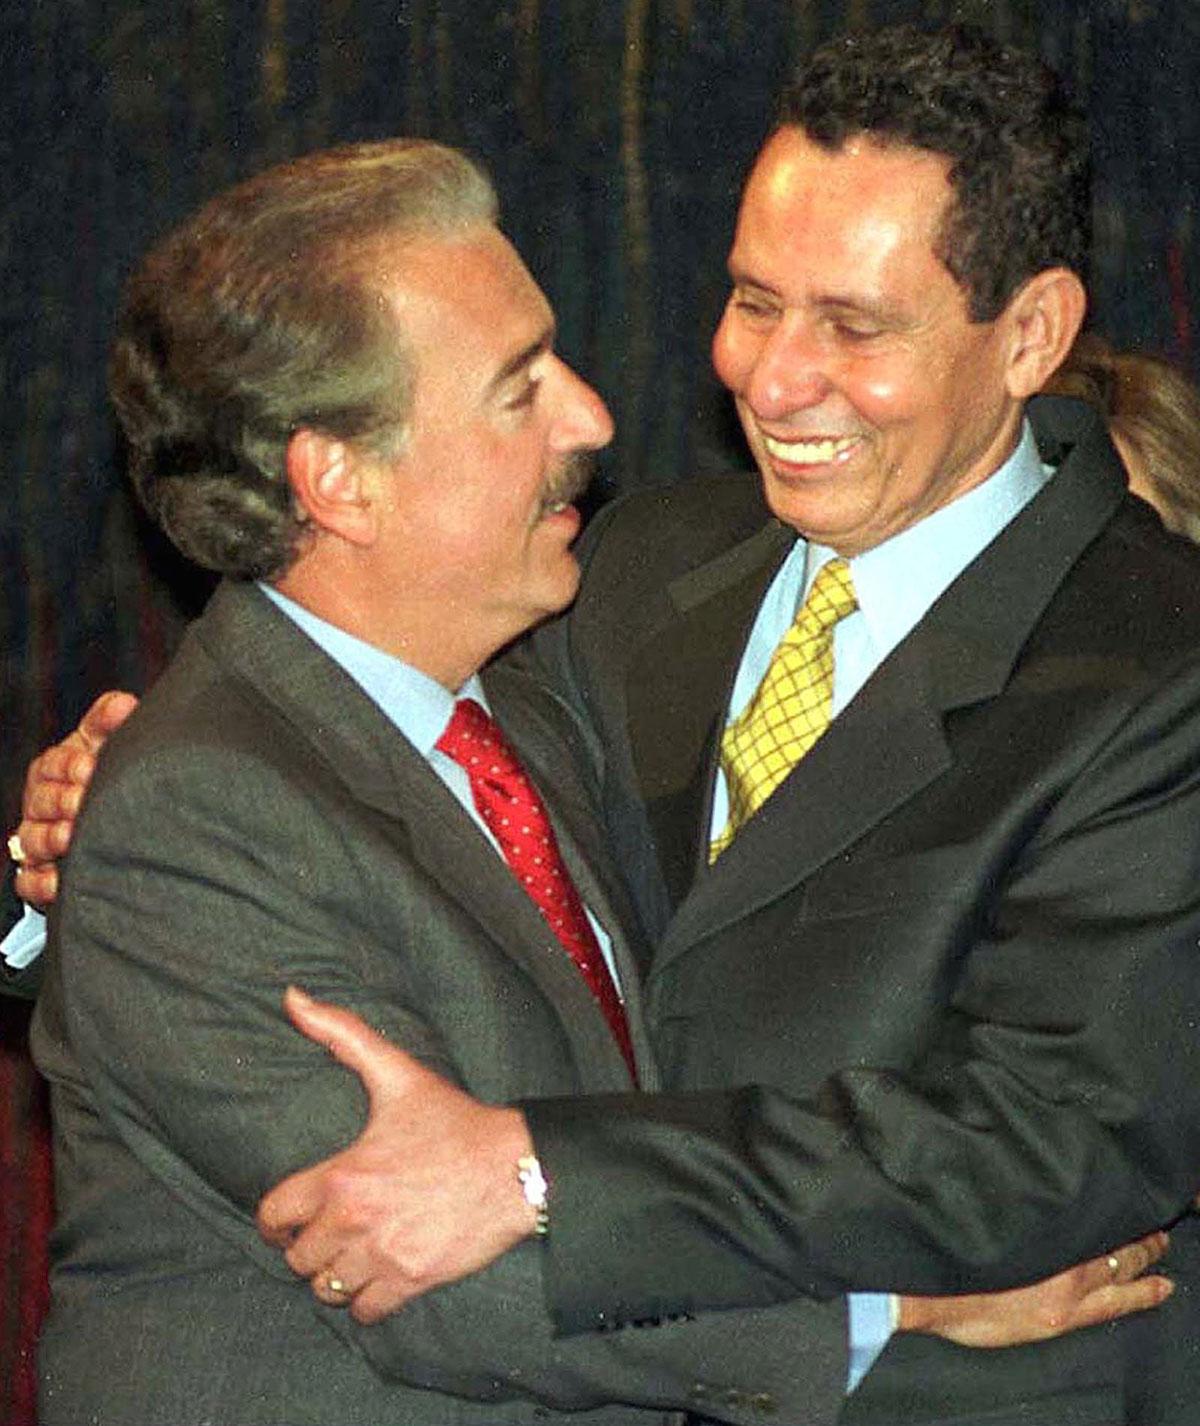 Colombia, 1997 Manuel Bonnet (till höger), general i Colombias dåvarande militär uppmanade fruar och flickvänner till män i gerillan eller i lokala knarkligor att vägra sex till deras våldsamma konflikter upphörde. (Till vänster ses Andres Pastrana, tidigare president i Colombia).